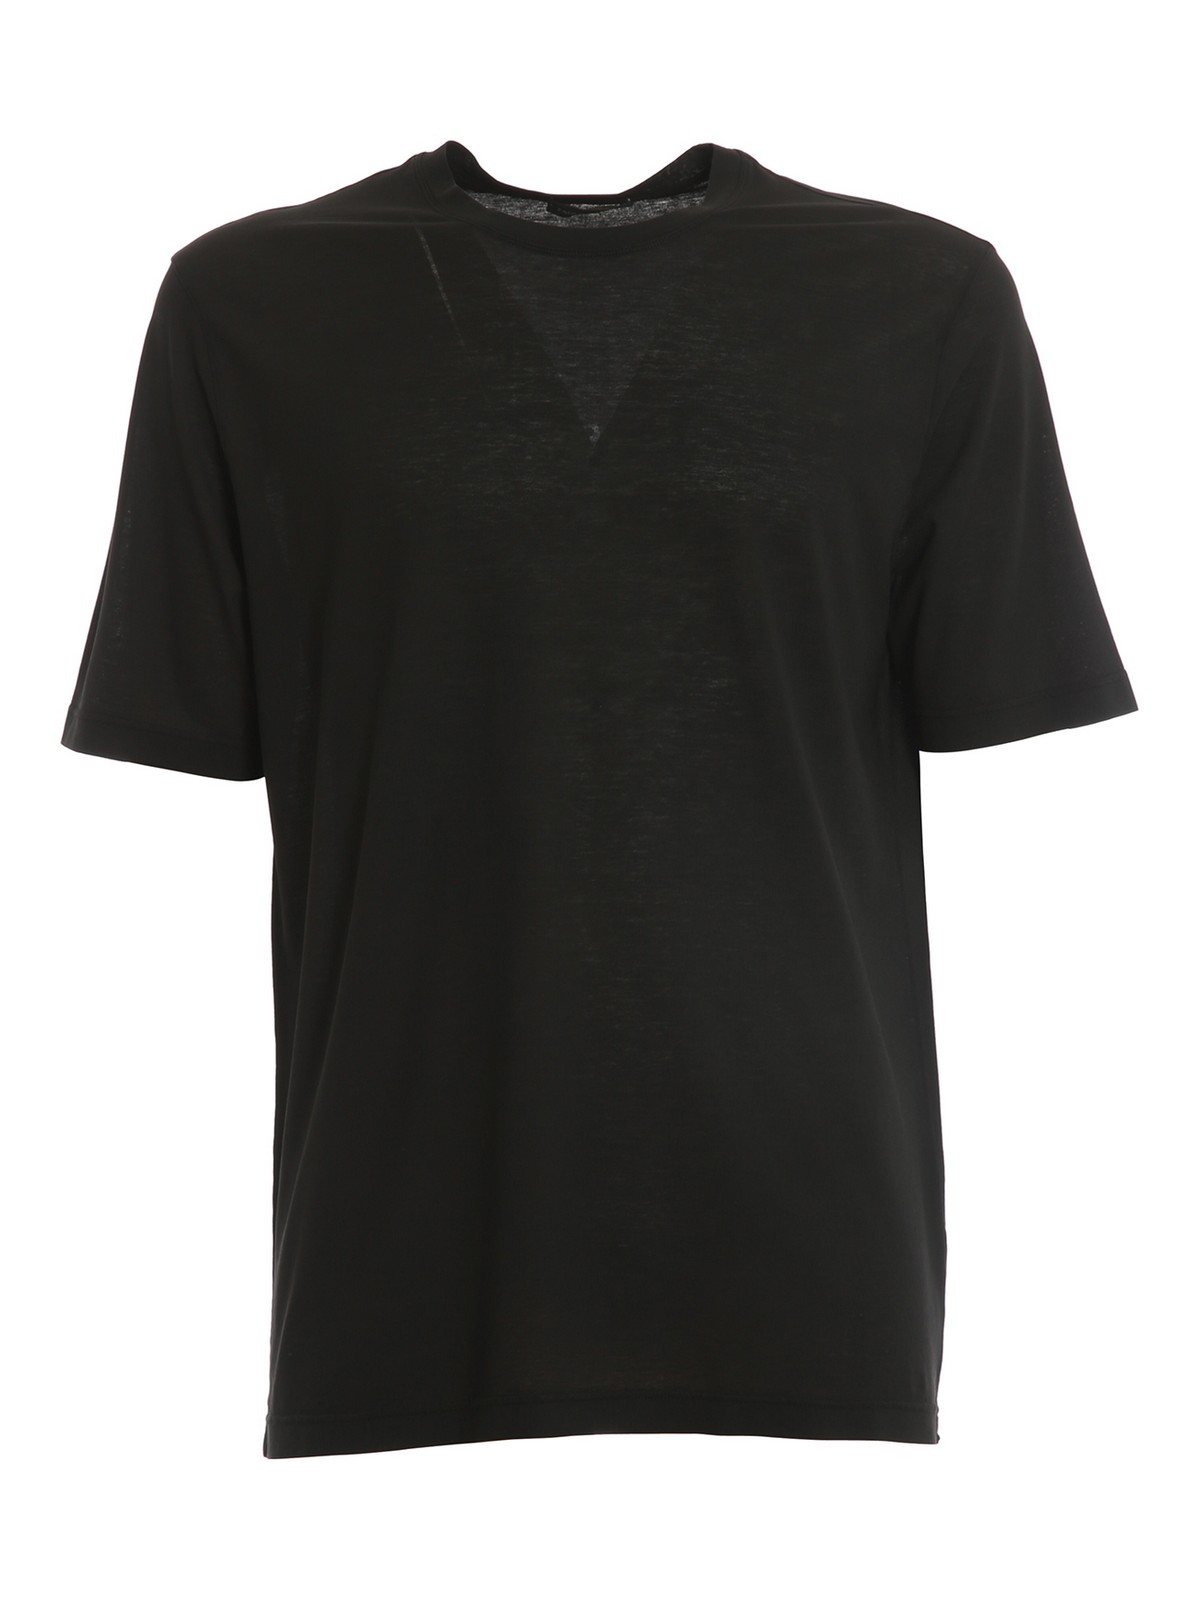 Paolo Fiorillo Cotton Crepe T-shirt In Black